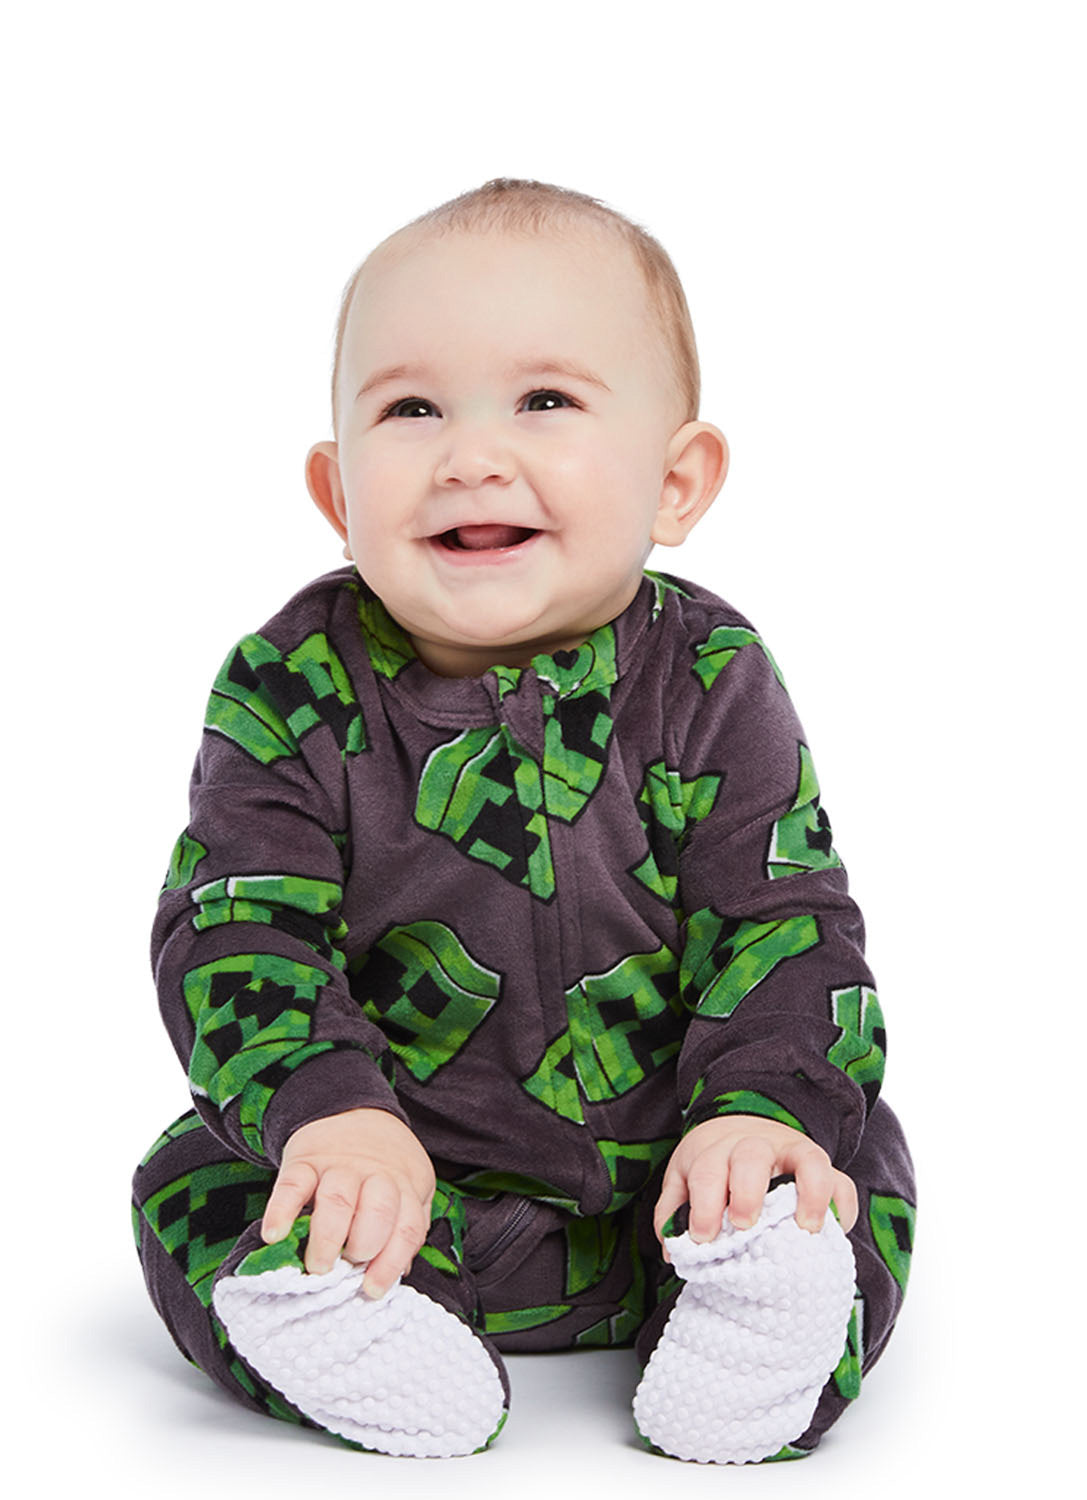 Baby wearing Minecraft onesie (gray & green)